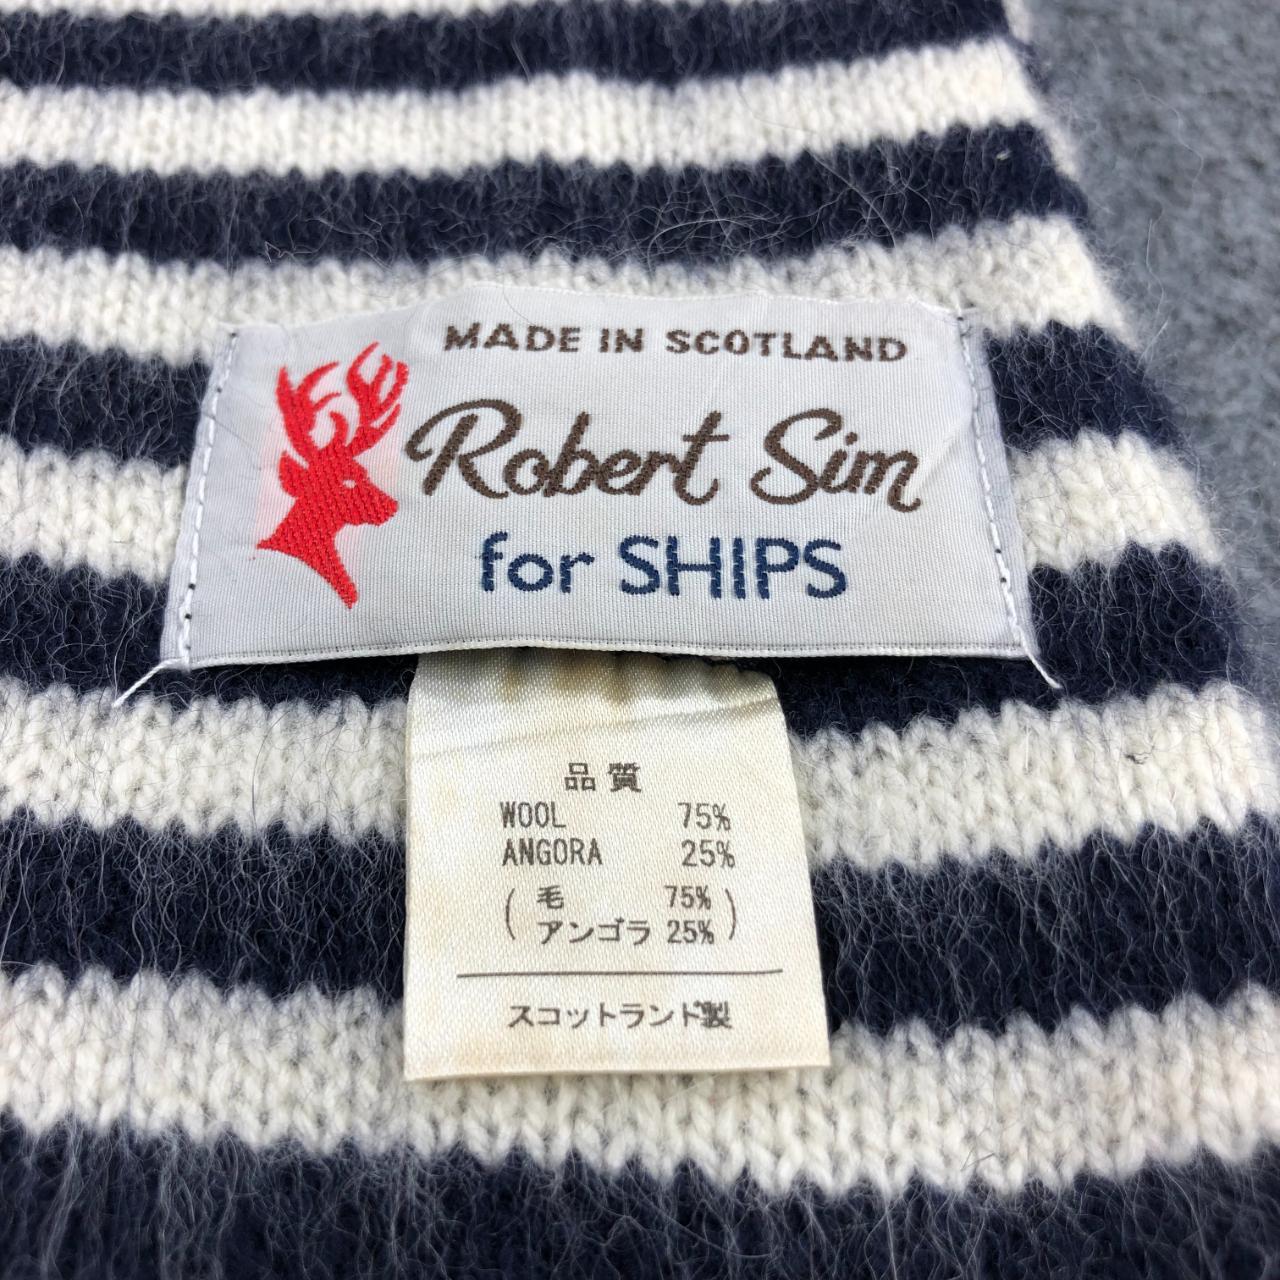 Robert Sim X Ships Stripes Scarf Muffler Cashmere... - Depop